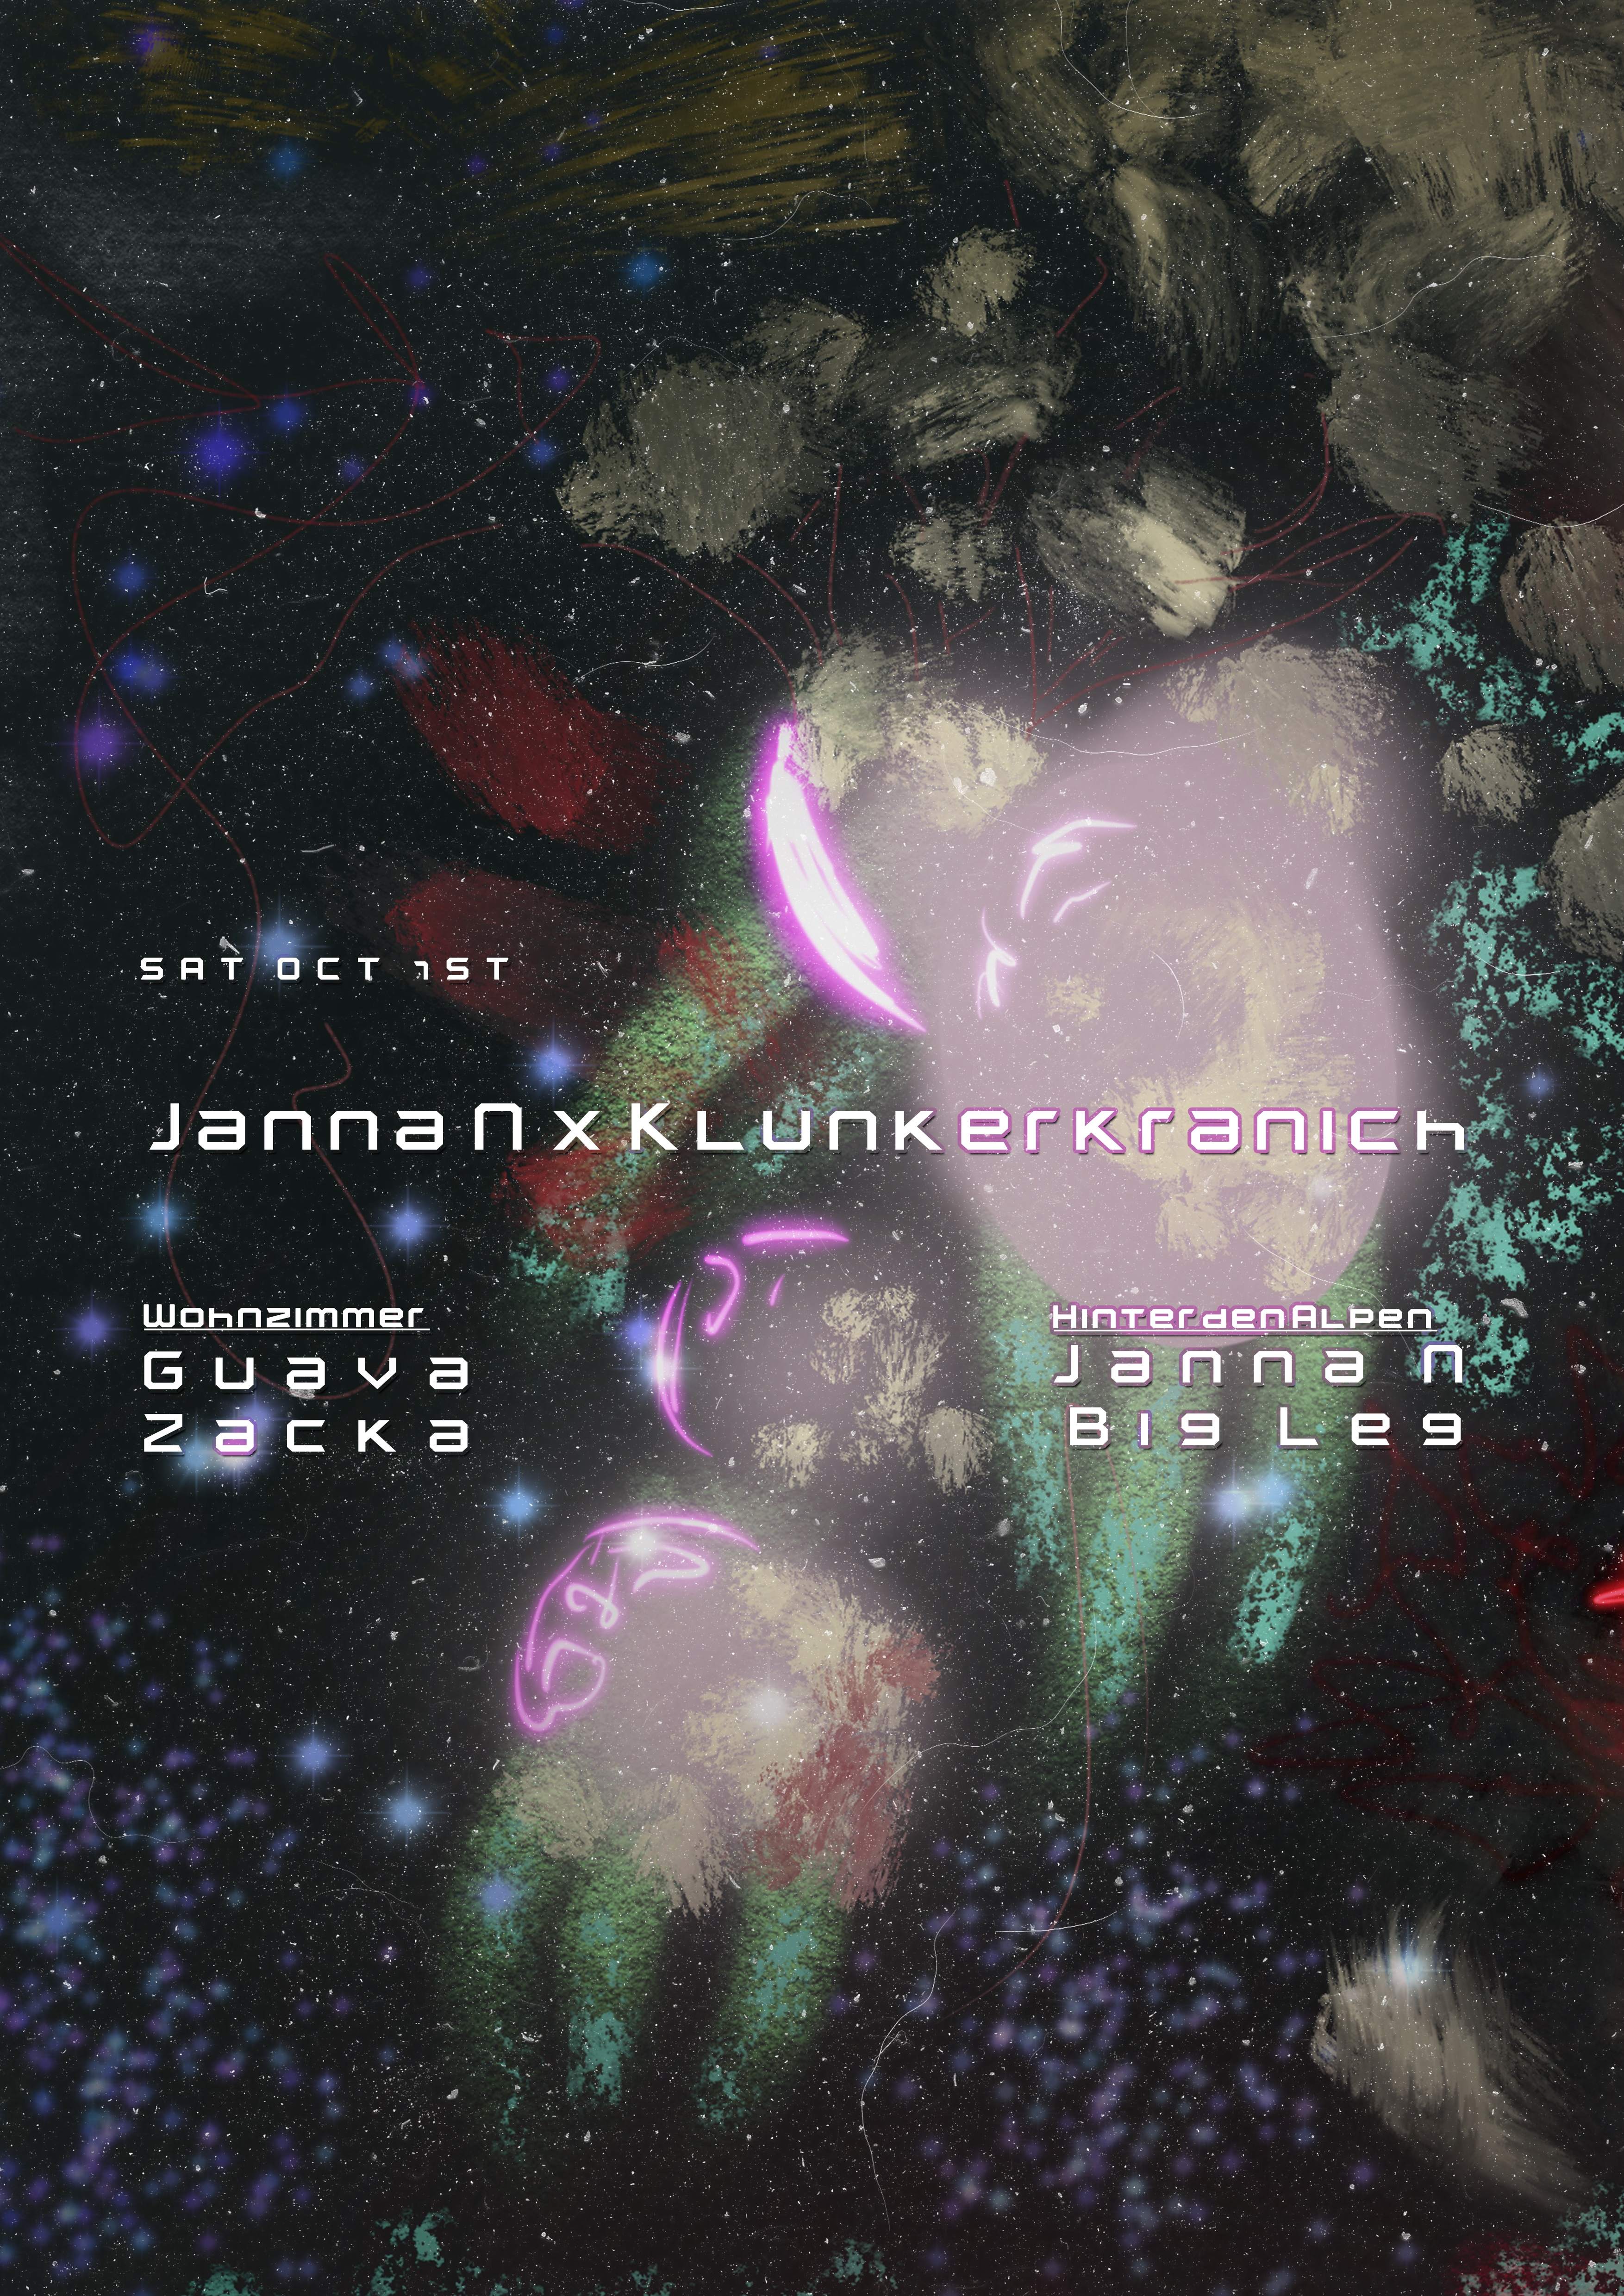 Janna N x Klunkerkranich: with Guava, Zacka, & Big Leg - フライヤー表